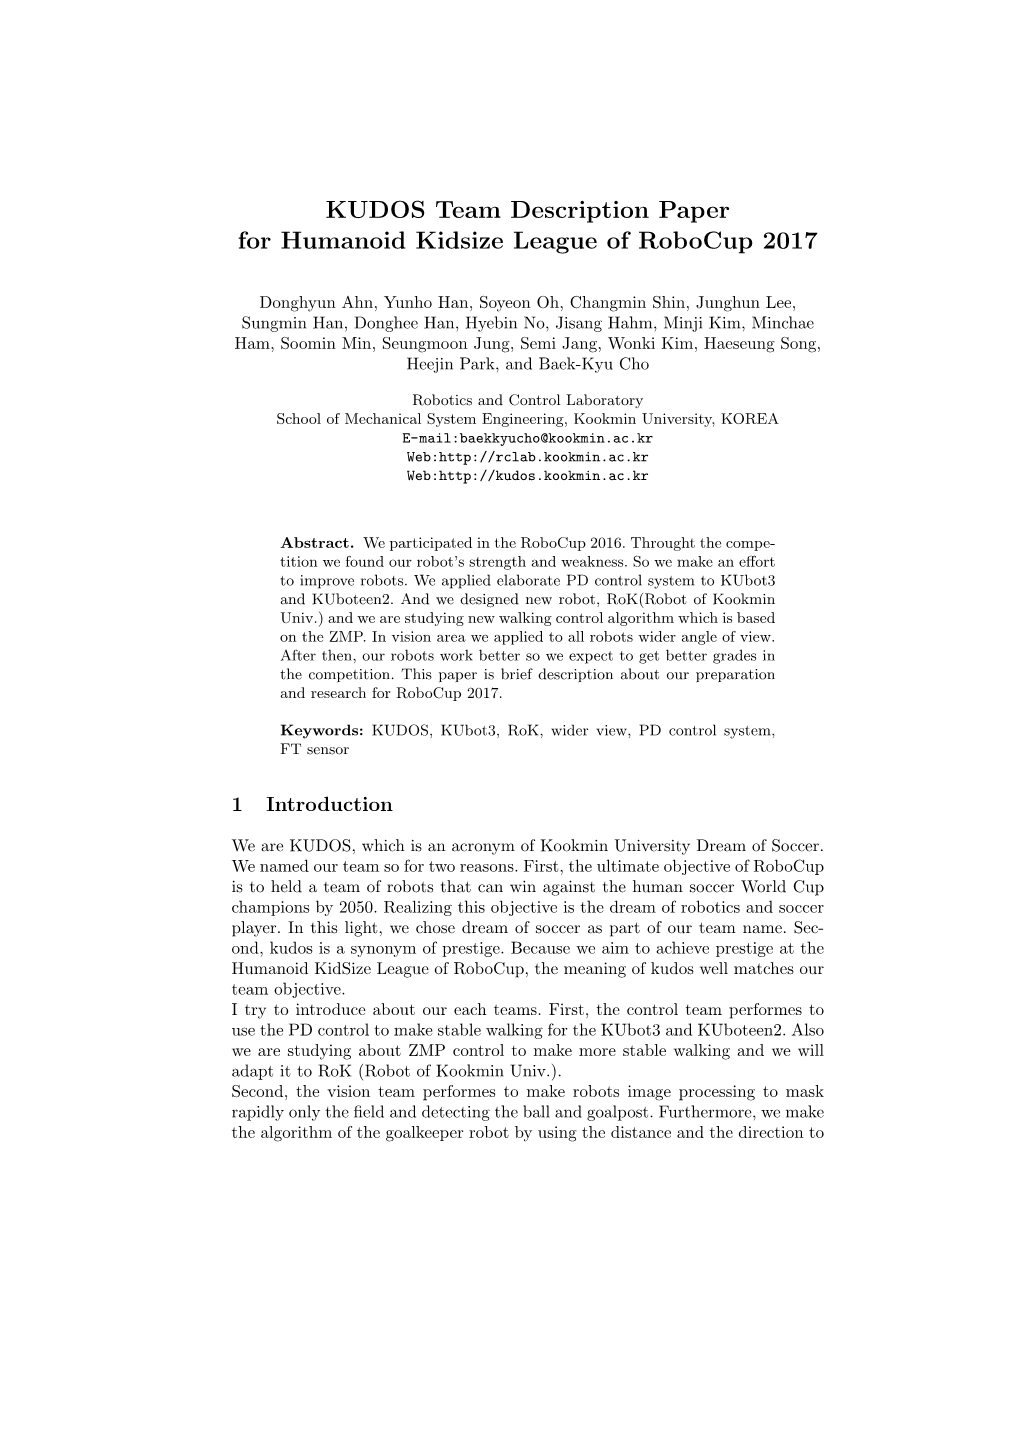 KUDOS Team Description Paper for Humanoid Kidsize League of Robocup 2017